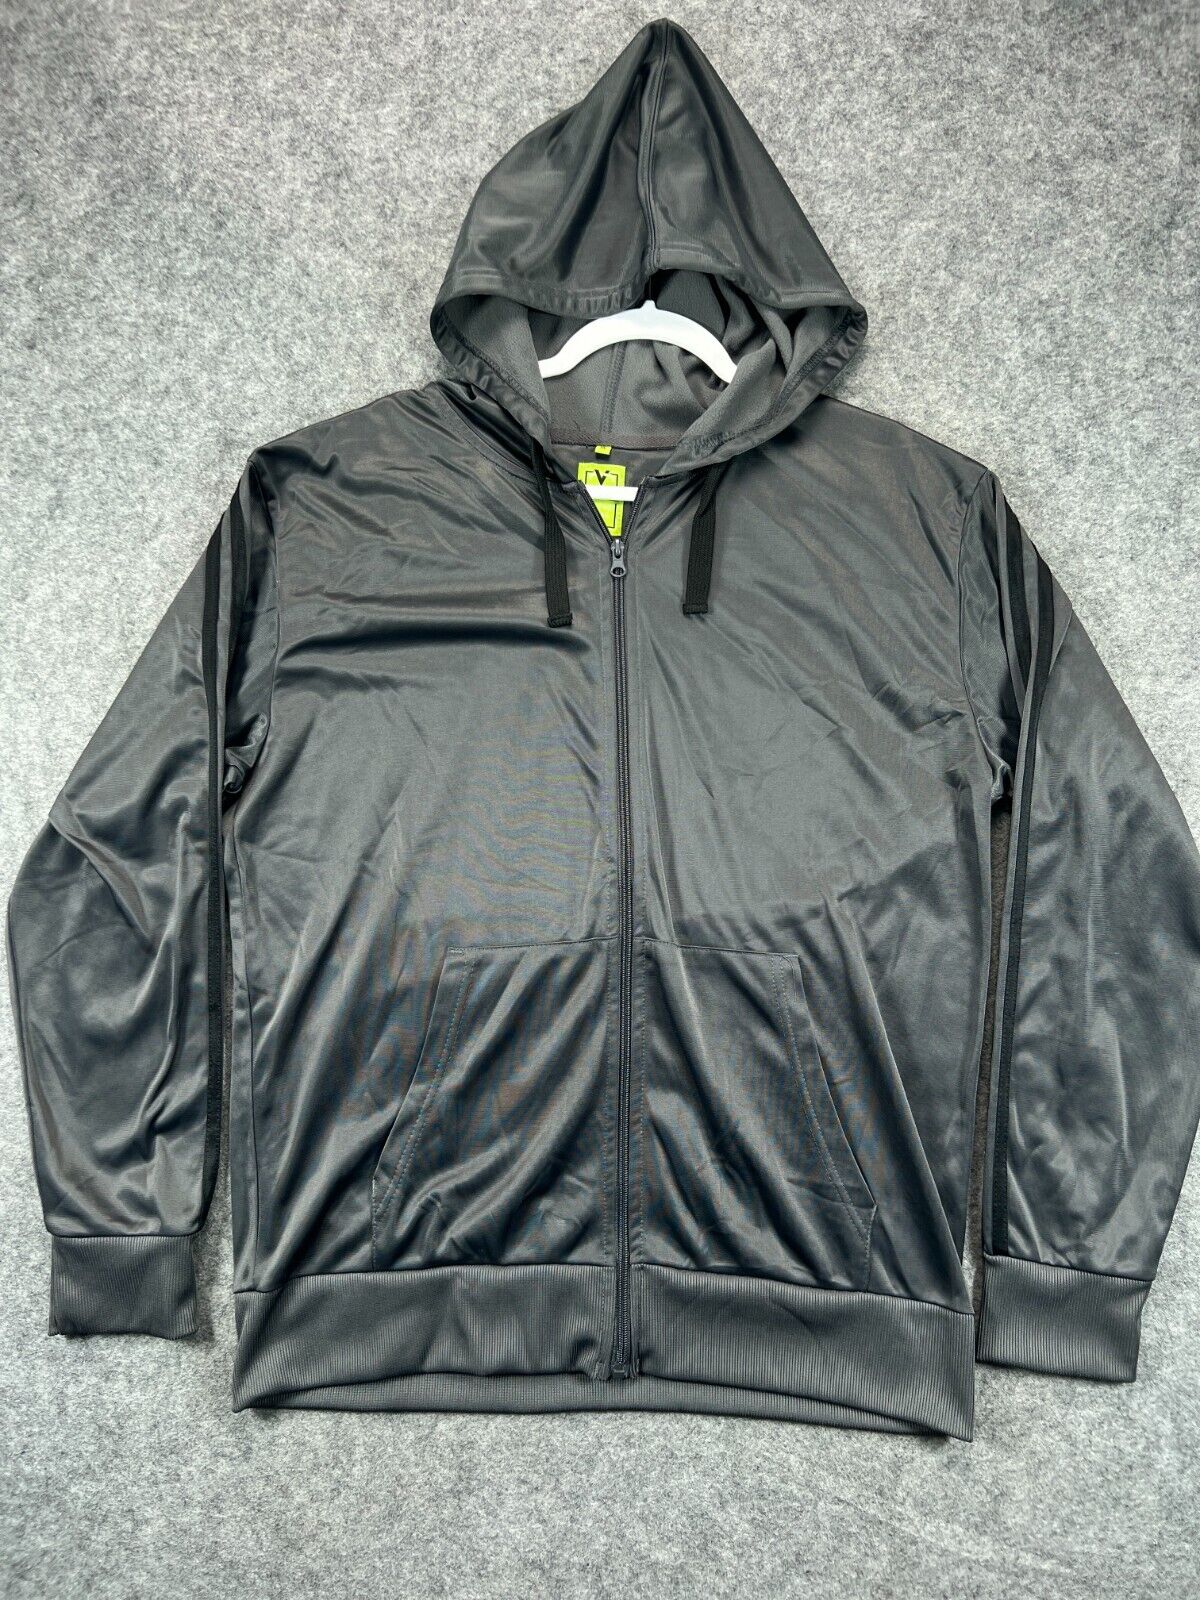 Victory Hoodie Jacket Adult Mens XL Gray Black Stripe Coat Long Sleeve